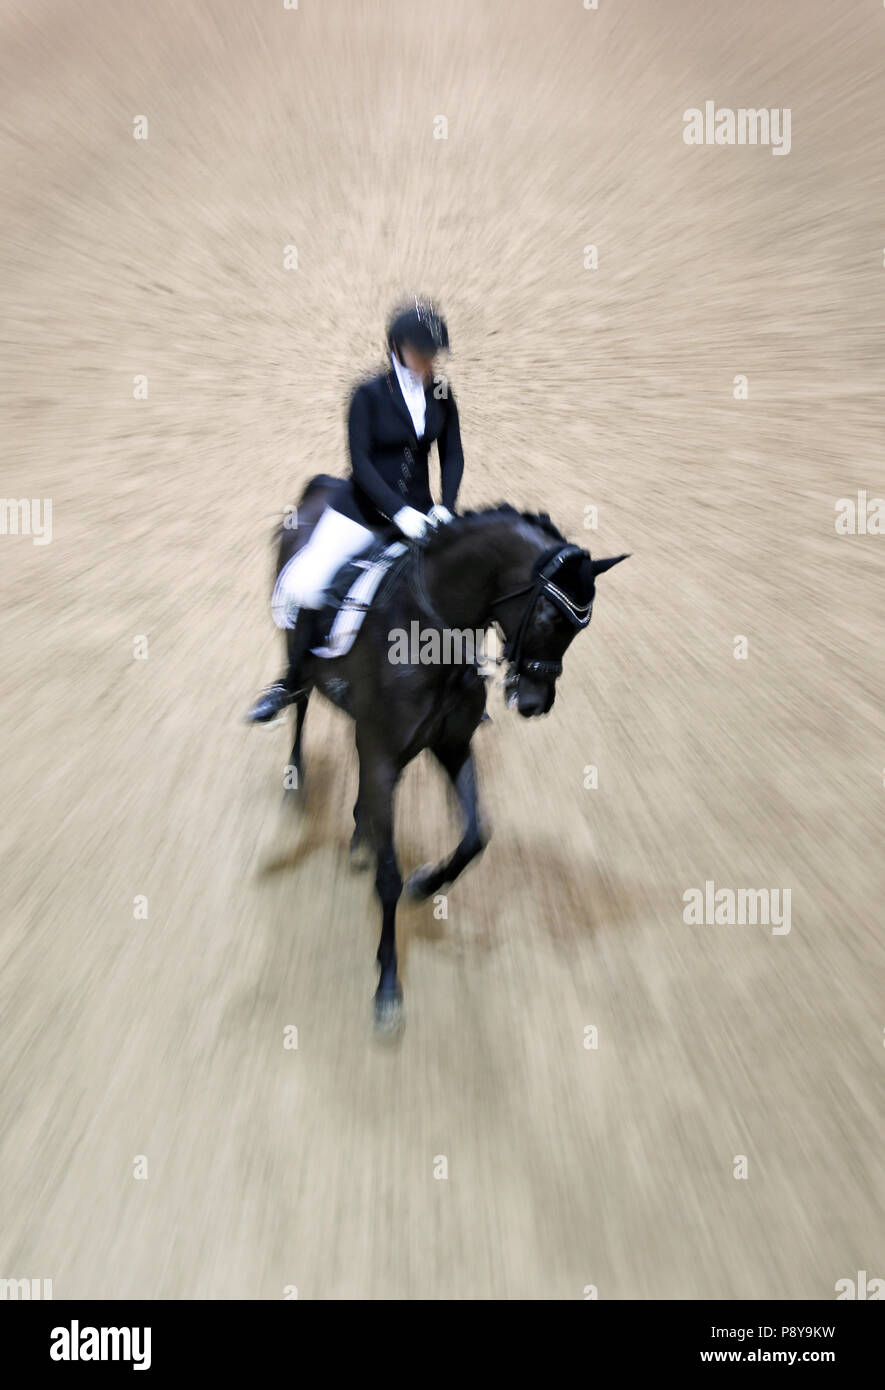 Berlino, dynamics, dressage rider e cavallo al galoppo Foto Stock